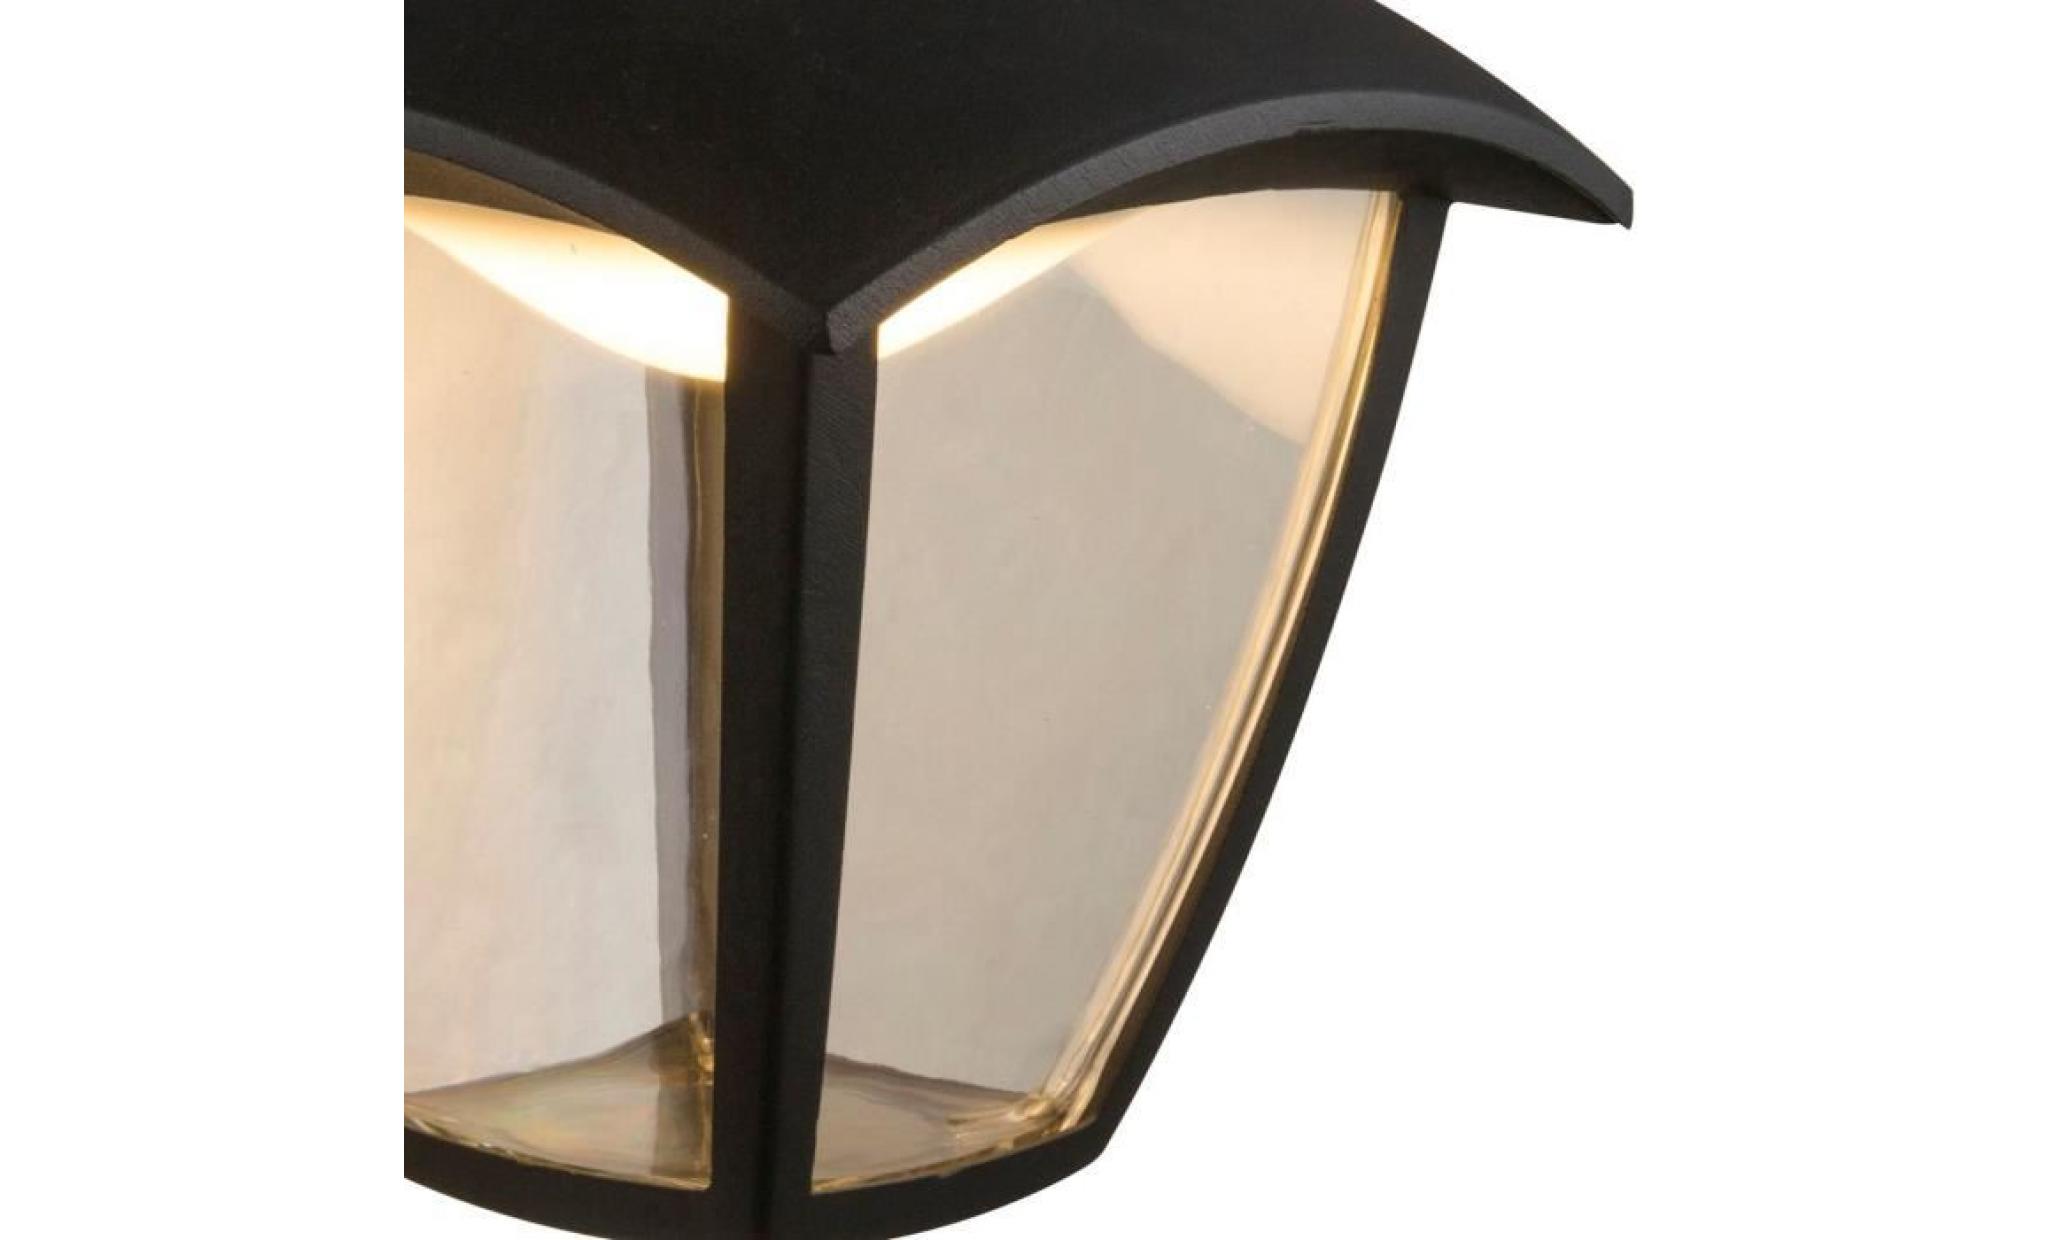 applique extérieur lanterne moderne led delio noire en aluminium kw170101 pas cher